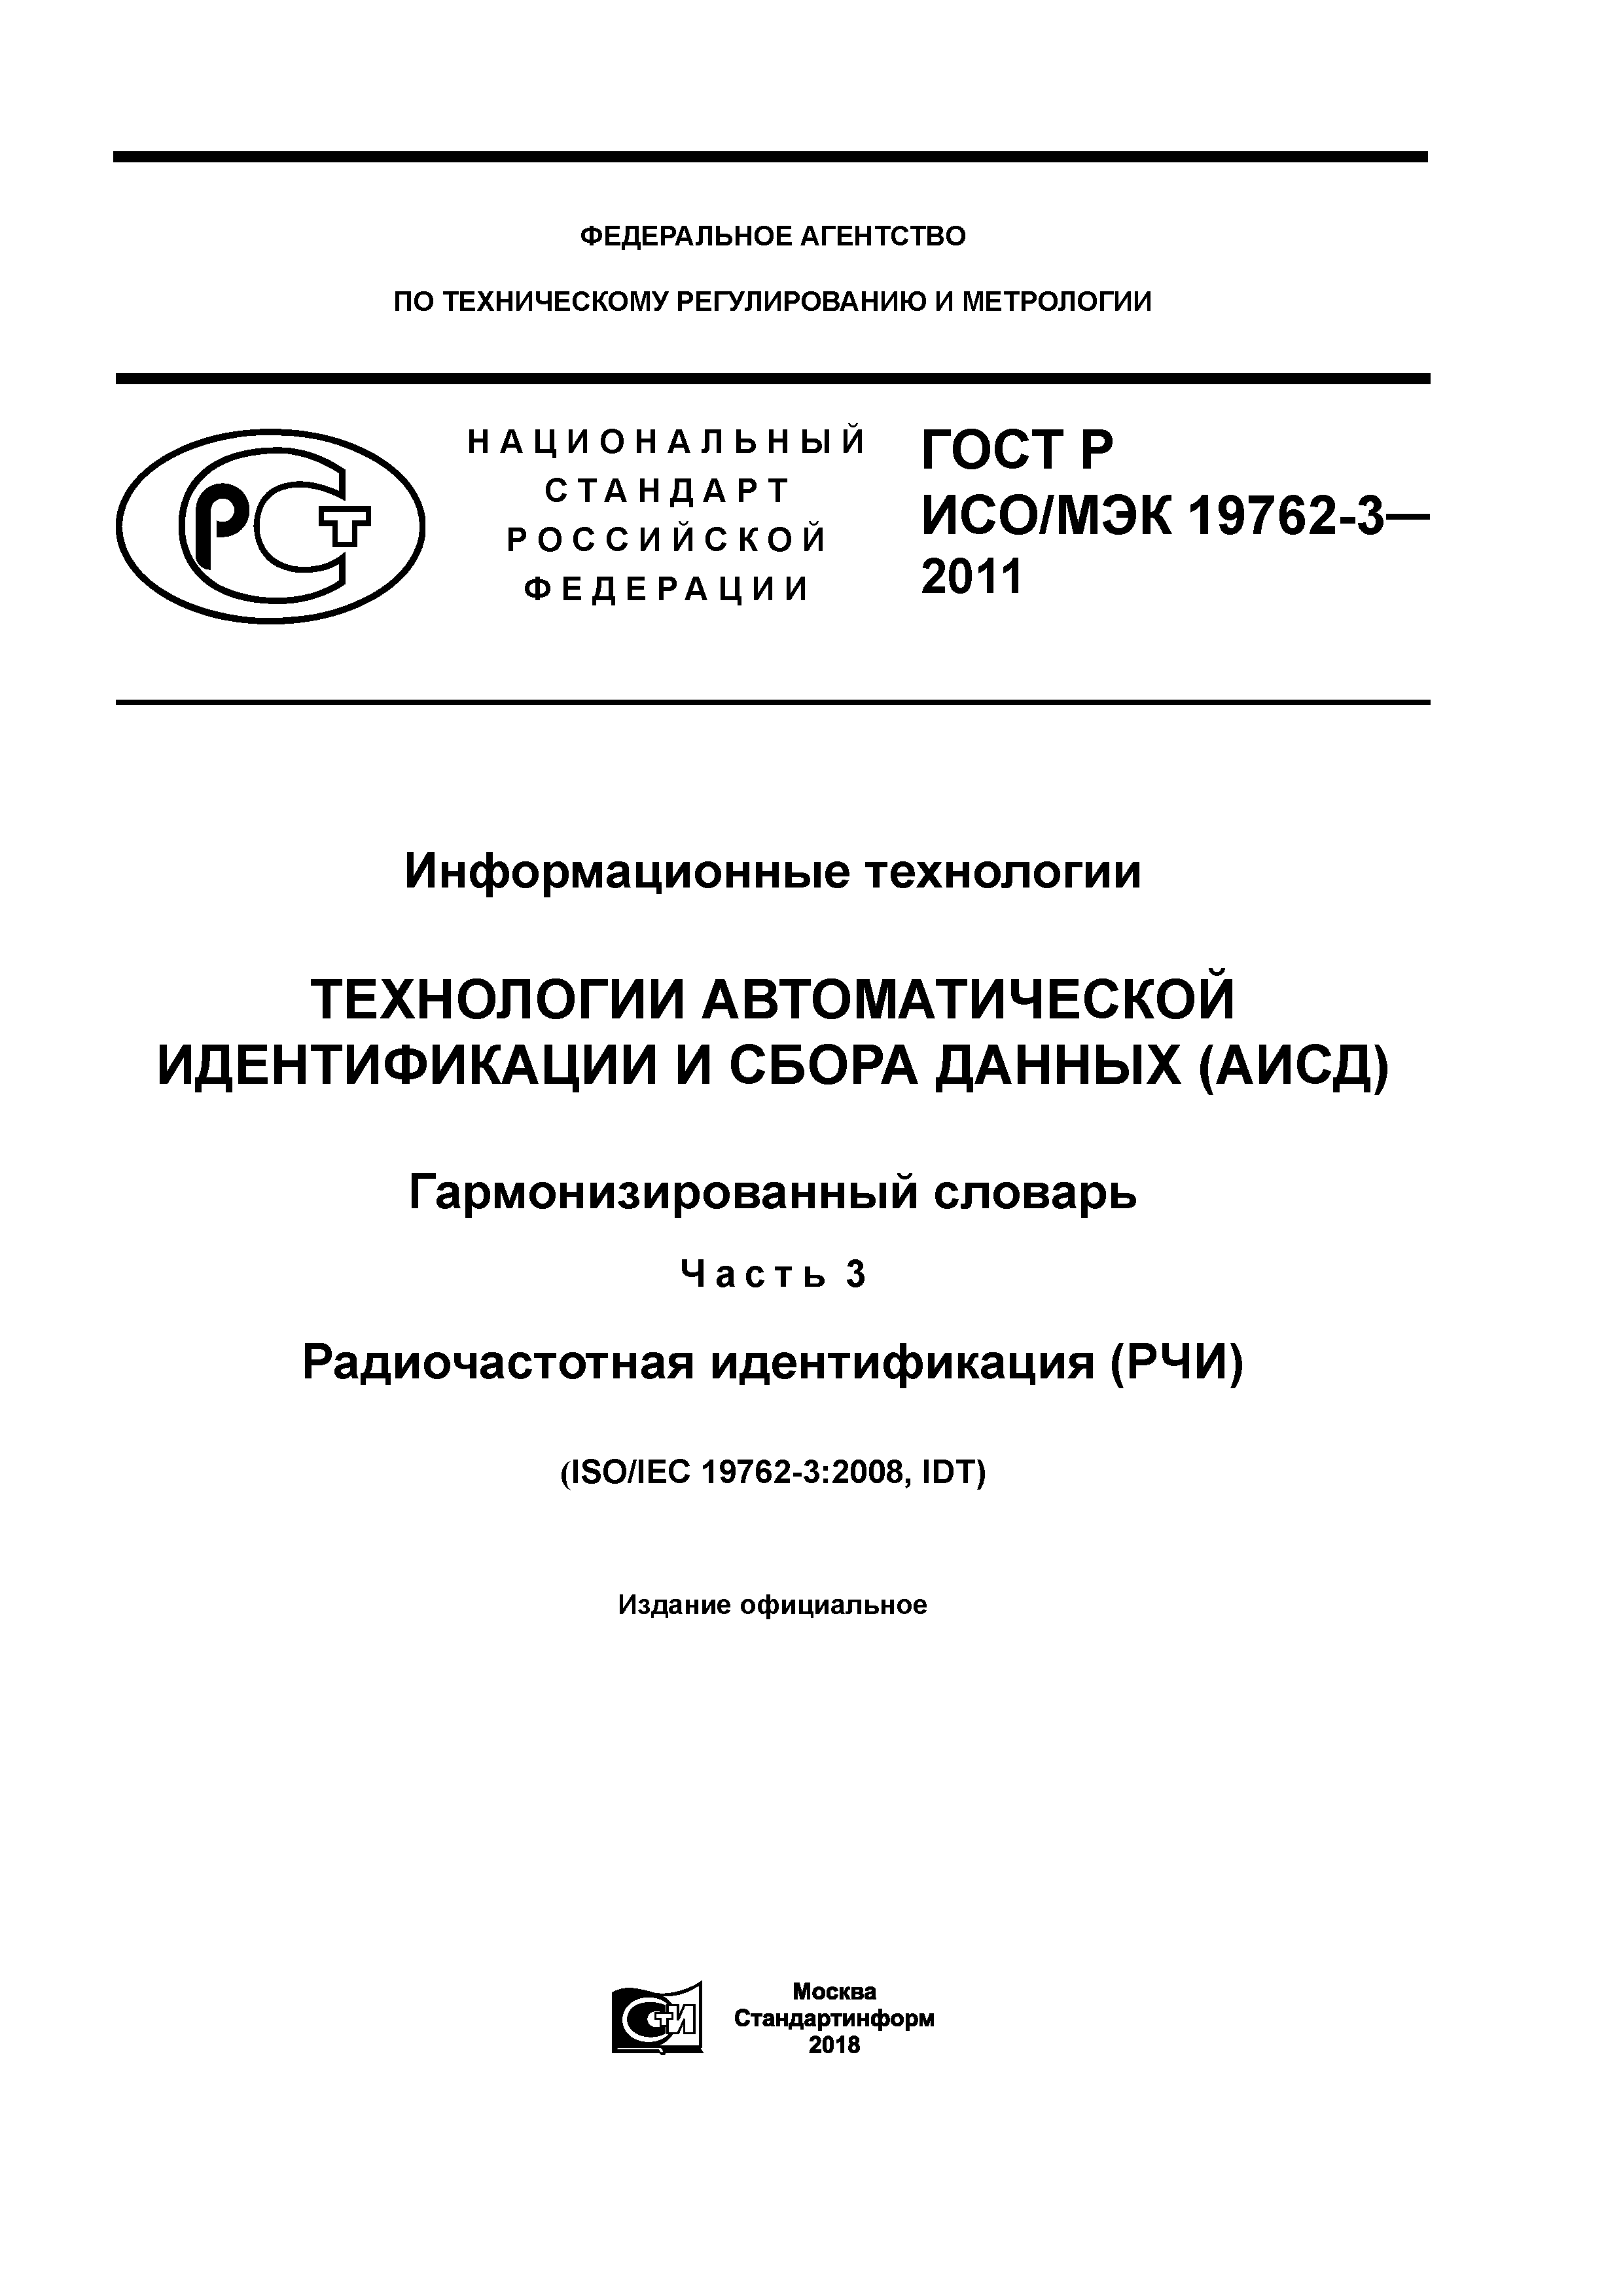 ГОСТ Р ИСО/МЭК 19762-3-2011